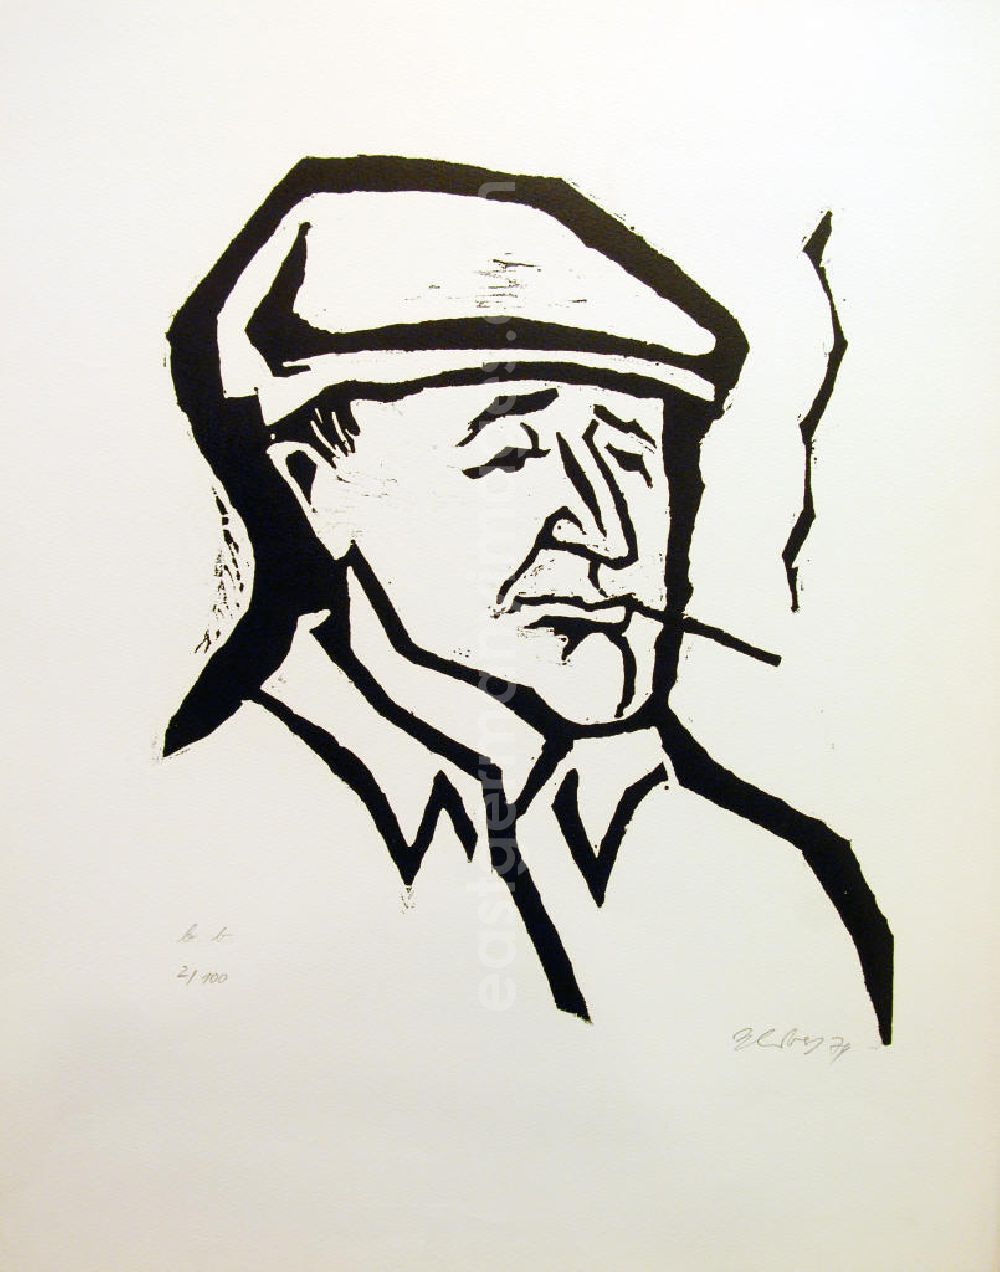 Berlin: Grafik von Herbert Sandberg über Bertolt Brecht (*10.02.1898 †14.08.1956) b.b. (Brecht Porträt links, raucht) aus dem Jahr 1974, 36,8x42,0cm Holzschnitt, handsigniert, 2/10